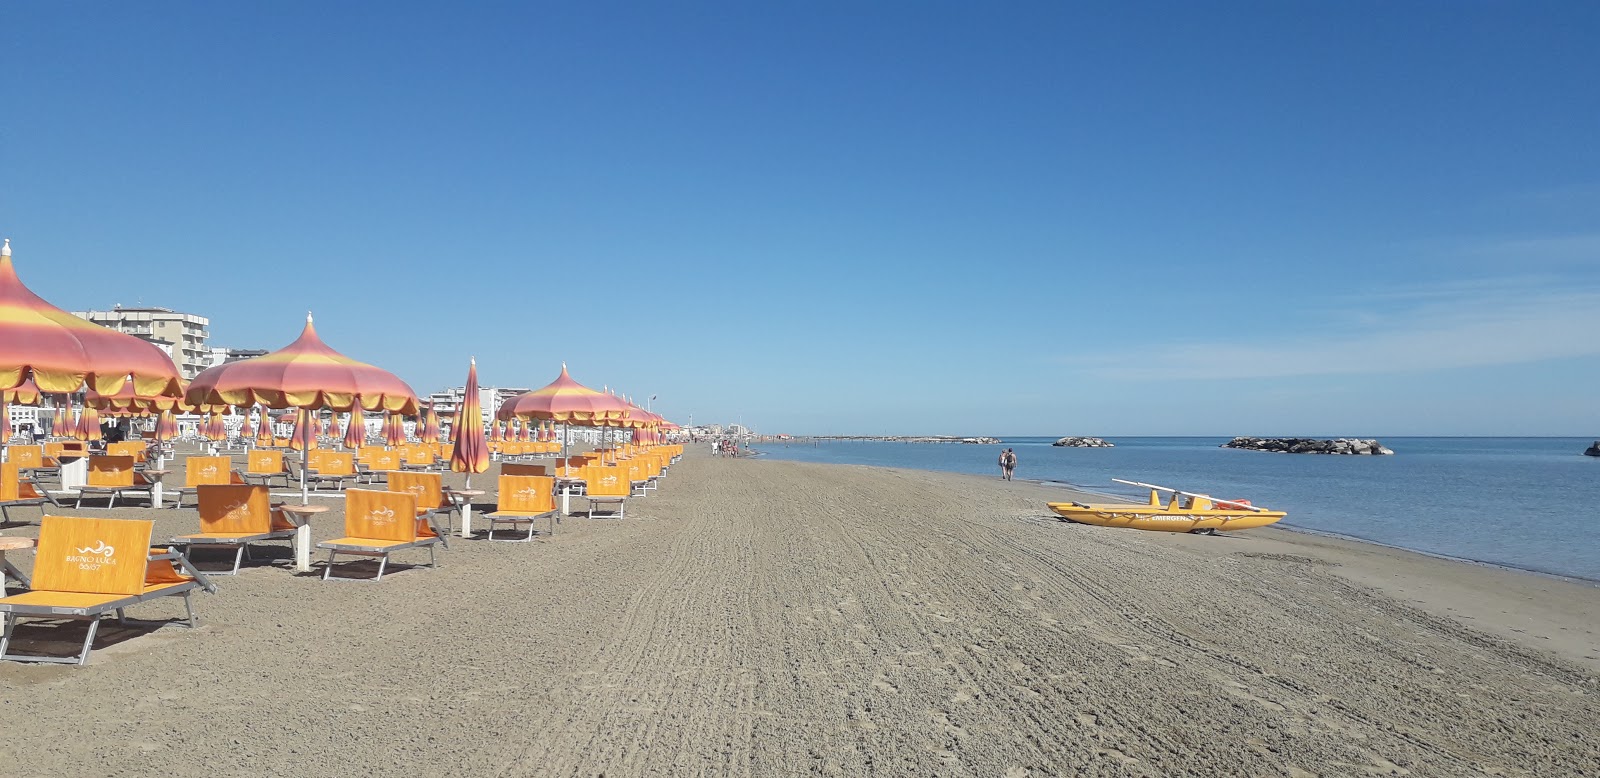 Fotografie cu Torre pedrera beach cu o suprafață de nisip fin strălucitor